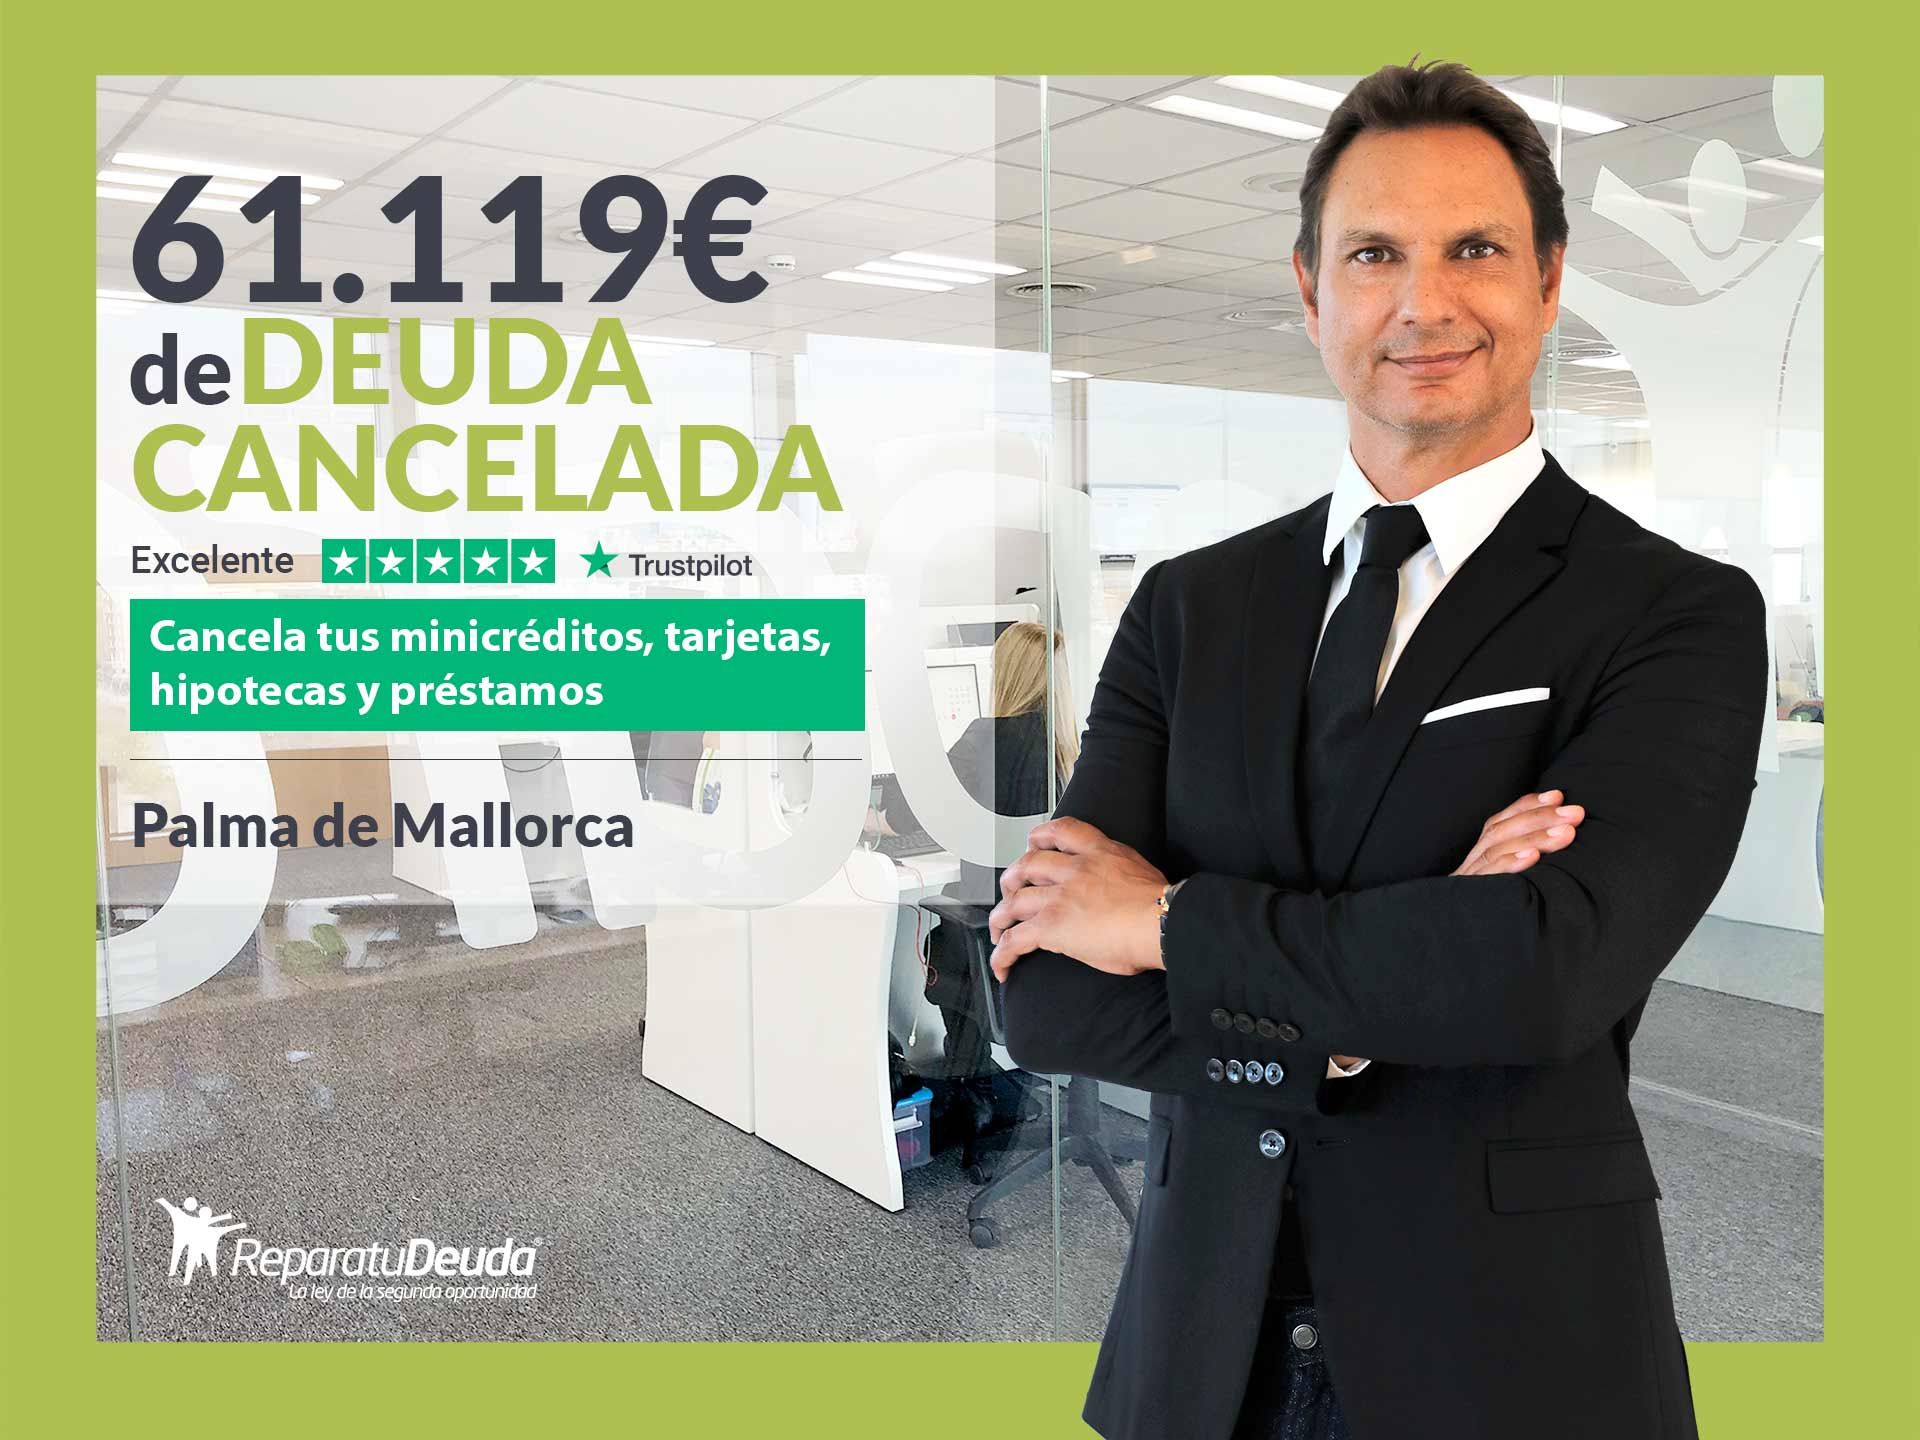 Repara tu Deuda Abogados cancela 61.119? en Mallorca (Baleares) con la Ley de Segunda Oportunidad